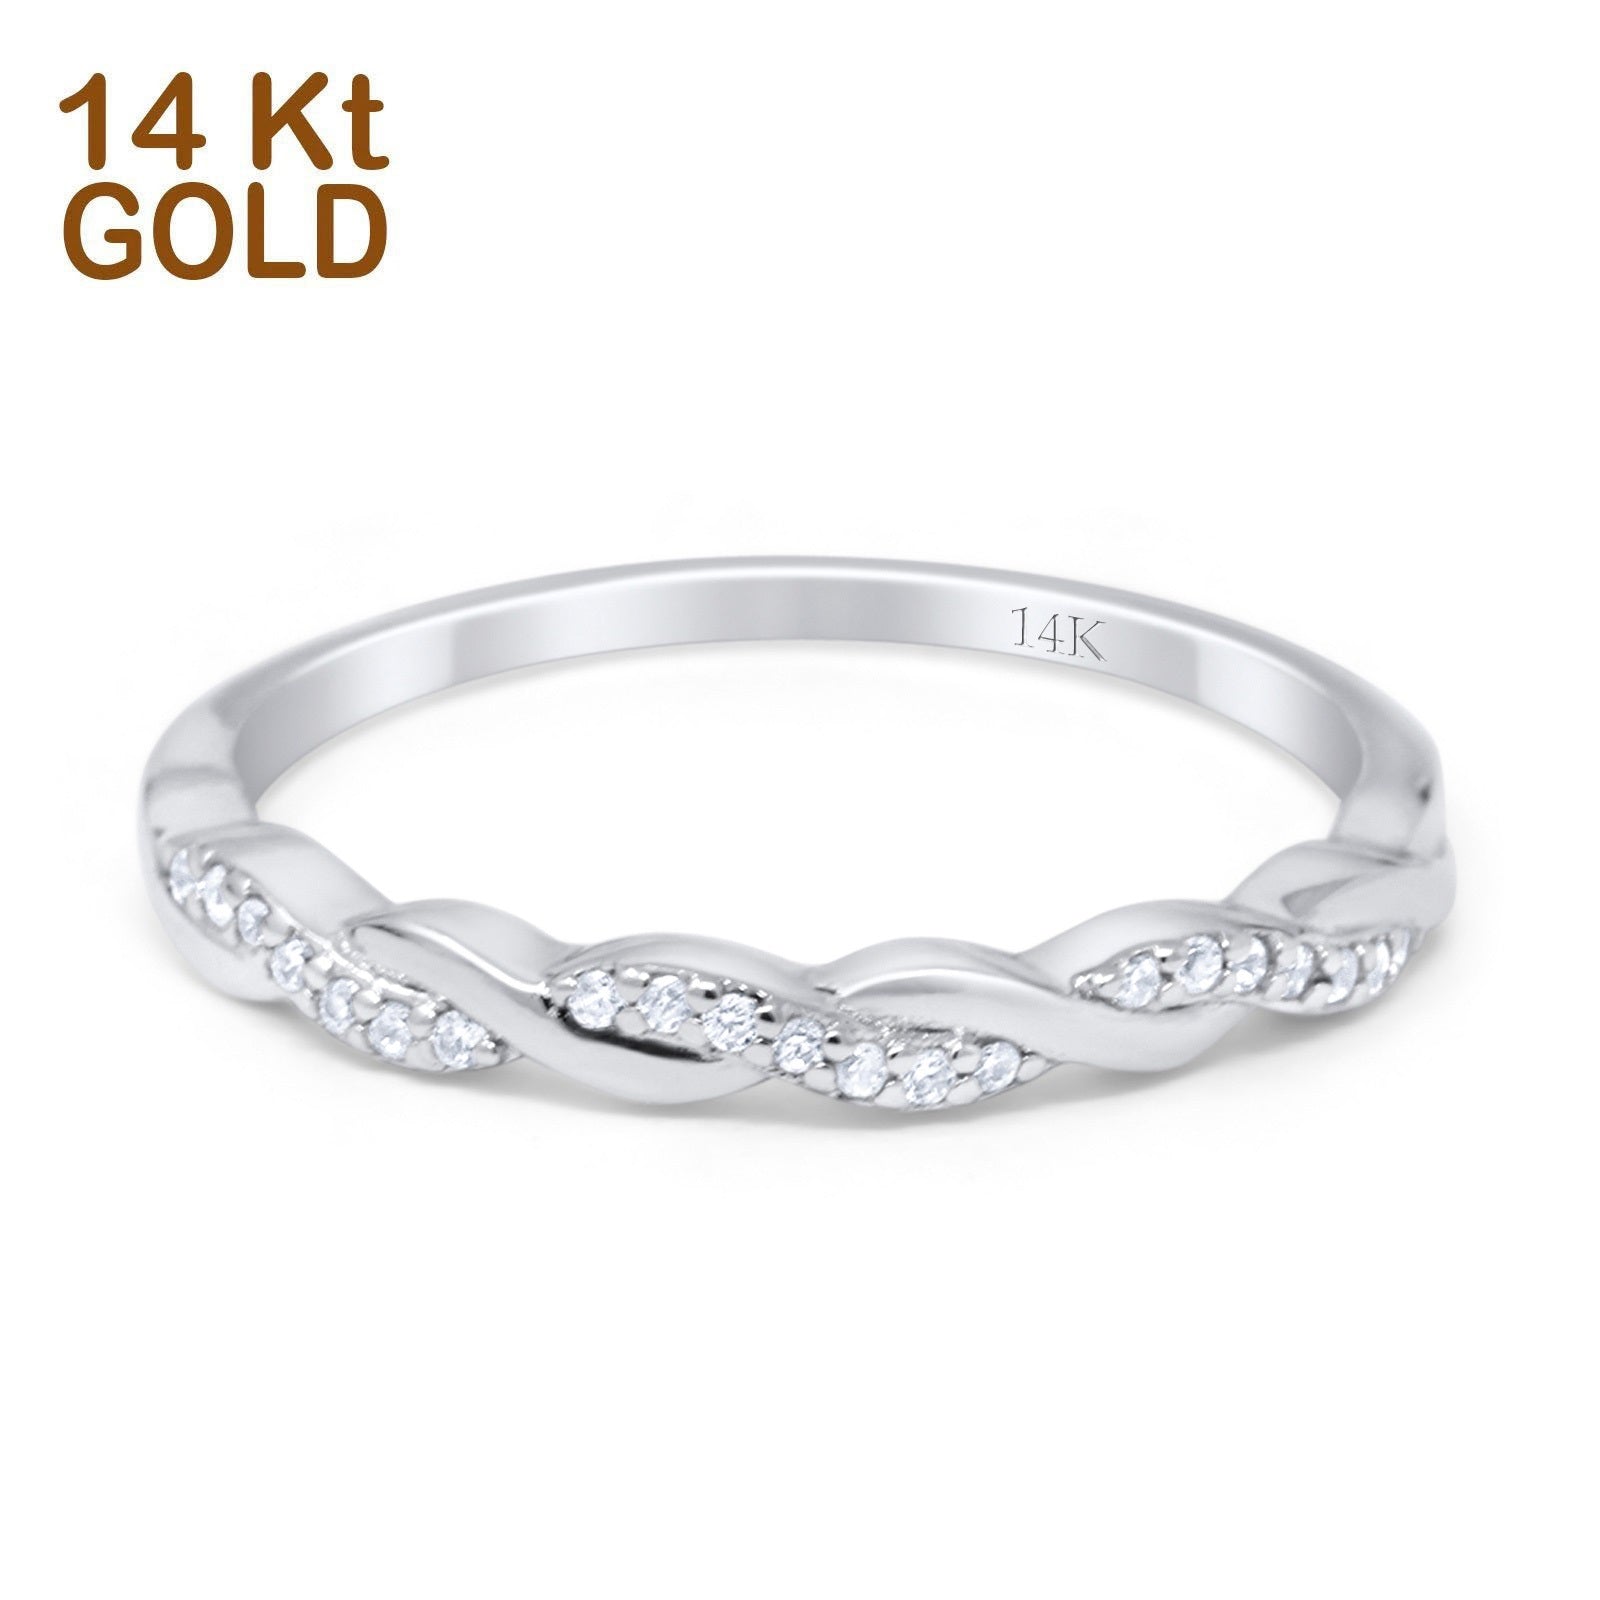 14K Gold Round Shape Half Eternity Twisted Band Simulated CZ Wedding Engagement Ring